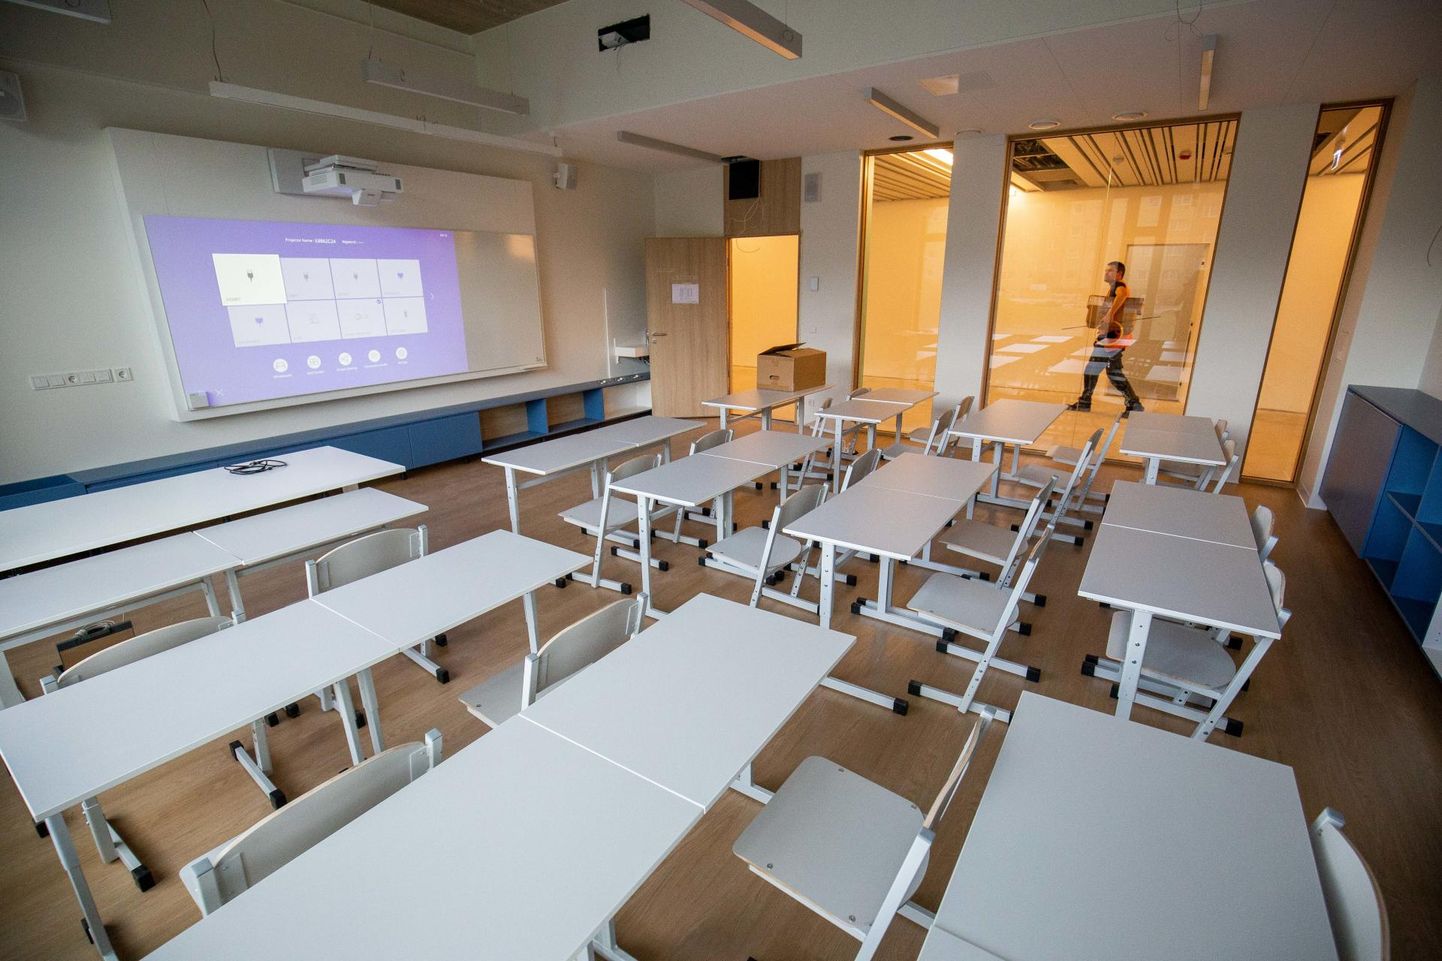 Uutesse koolimajadesse on moodne ventilatsioonisüsteem sisse ehitatud. Nii võivad ka Türi põhikooli eelmise aasta septembris avatud uue hoone asukad end seal muretult tunda.